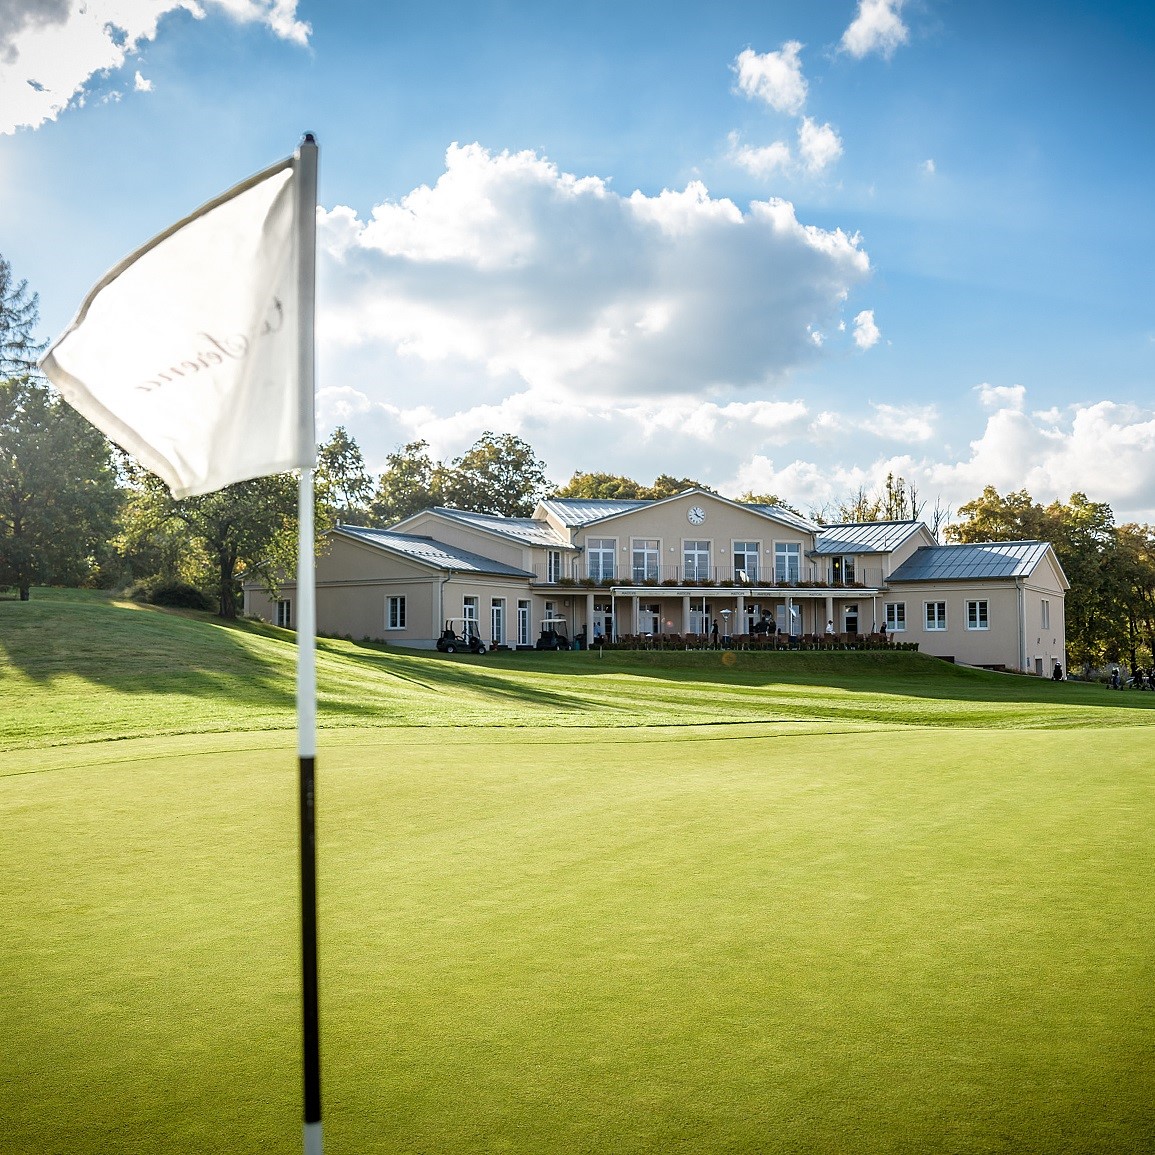 卡萨塞雷娜高尔夫 Casa Serena Golf | 捷克高尔夫球场俱乐部 | 欧洲高尔夫 | Czech